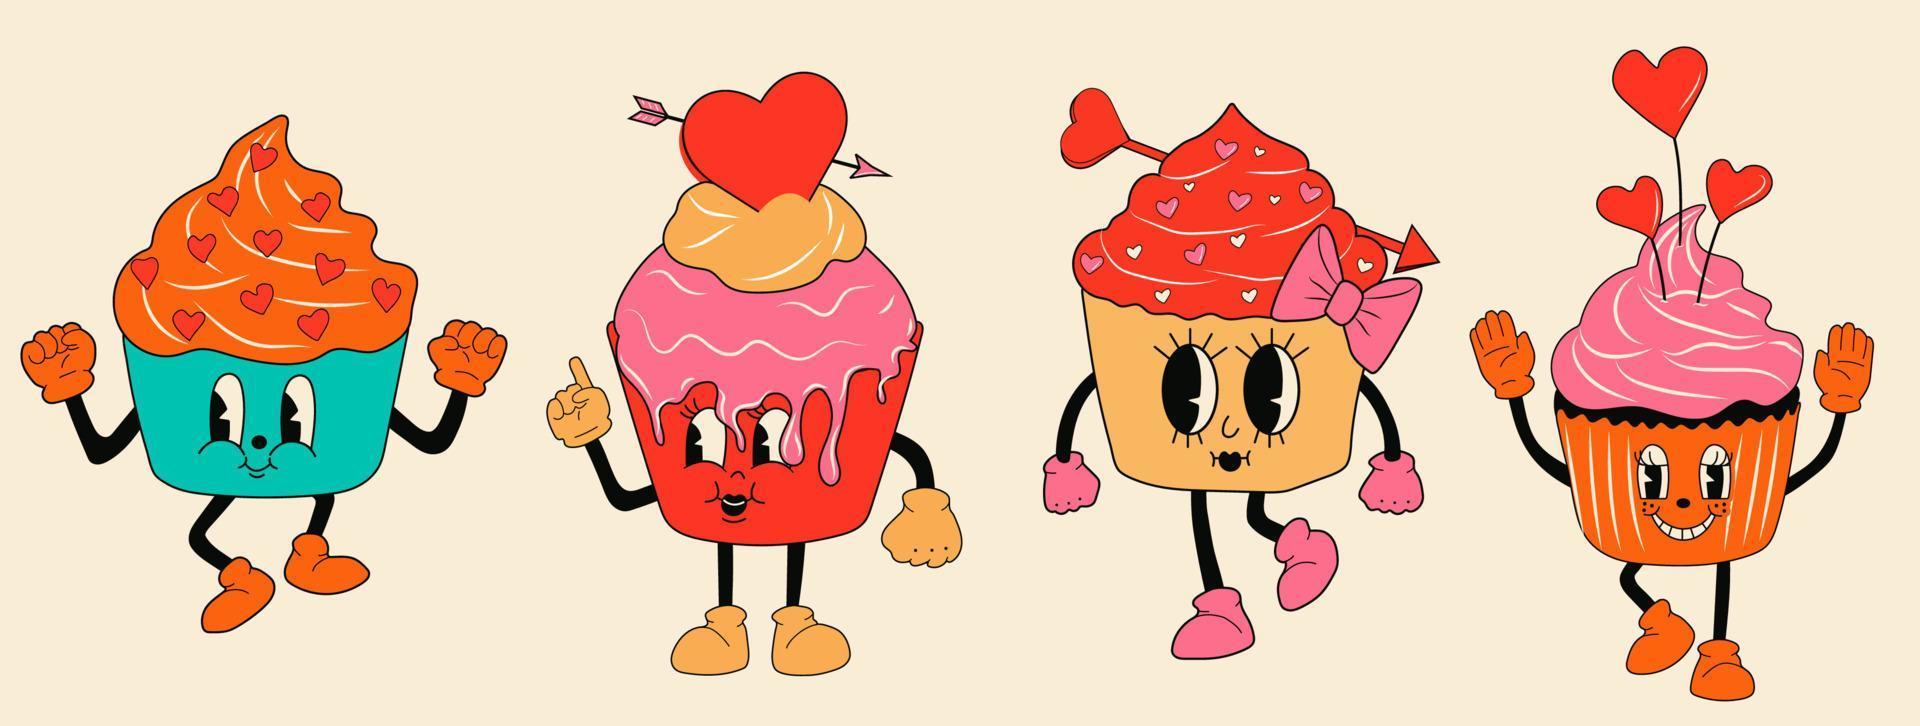 ensemble rétro cupcake personnages de mascottes de dessins animés des années 30 -. Style d'animation des années 40, 50, 60. Vecteur de style cupcake de la Saint-Valentin. heureux, sourire émotions.